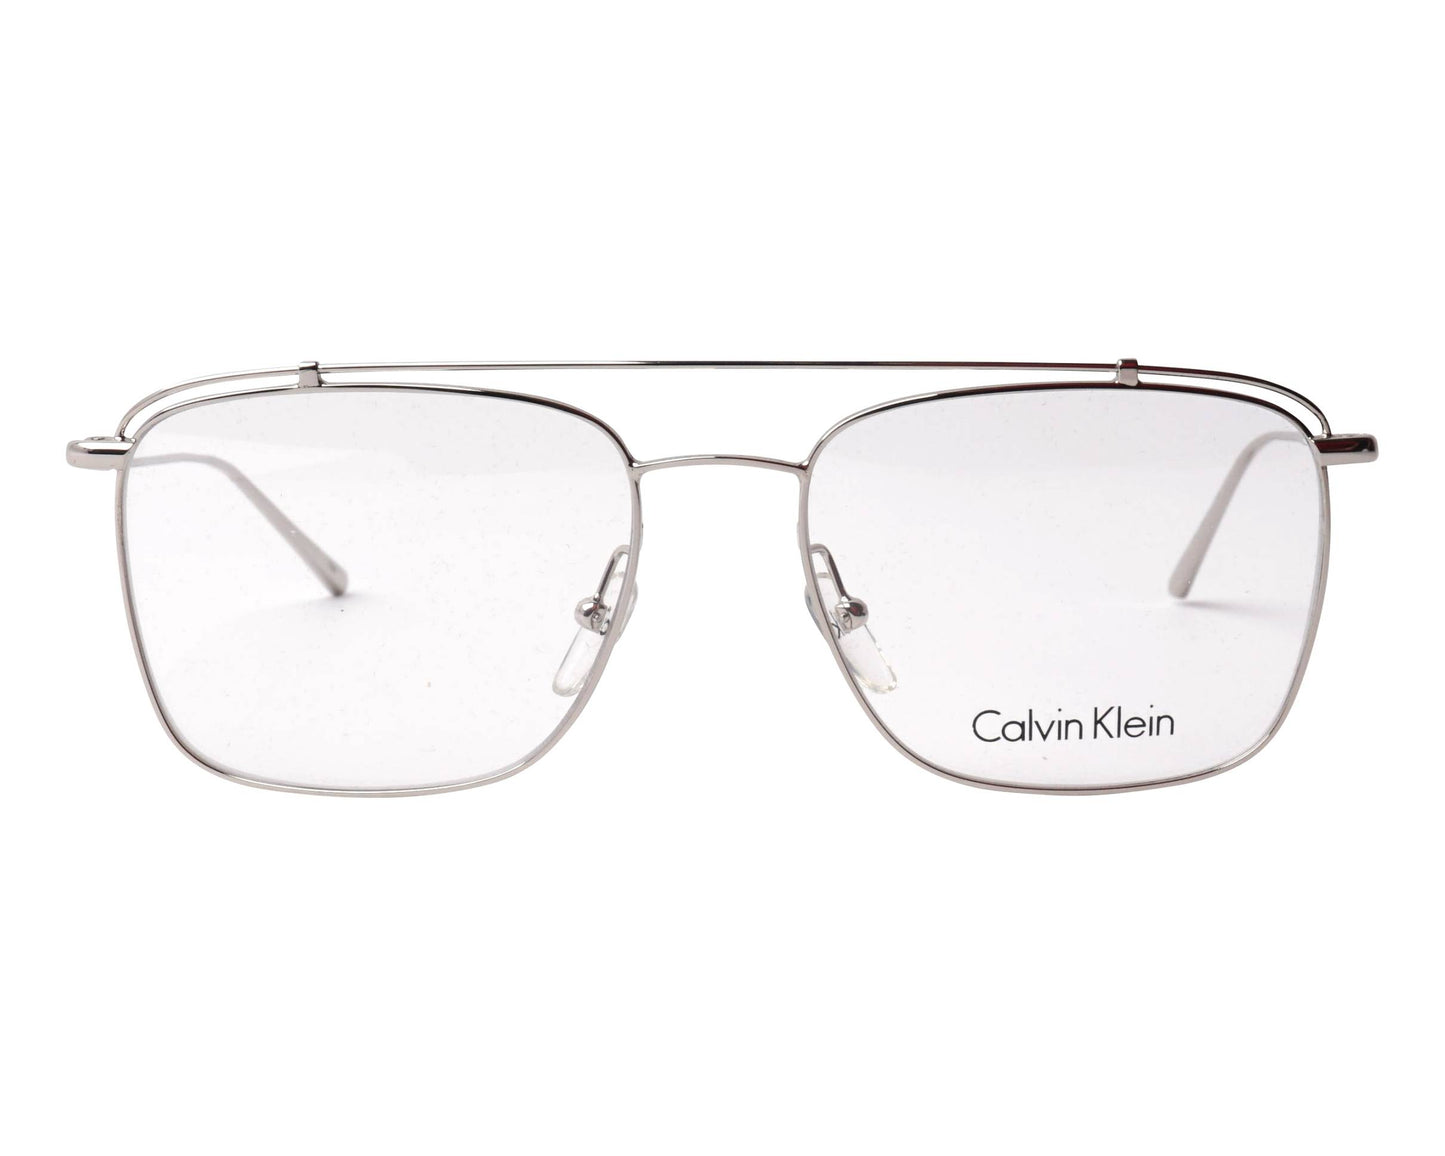 CK5461 (Calvin Klein)